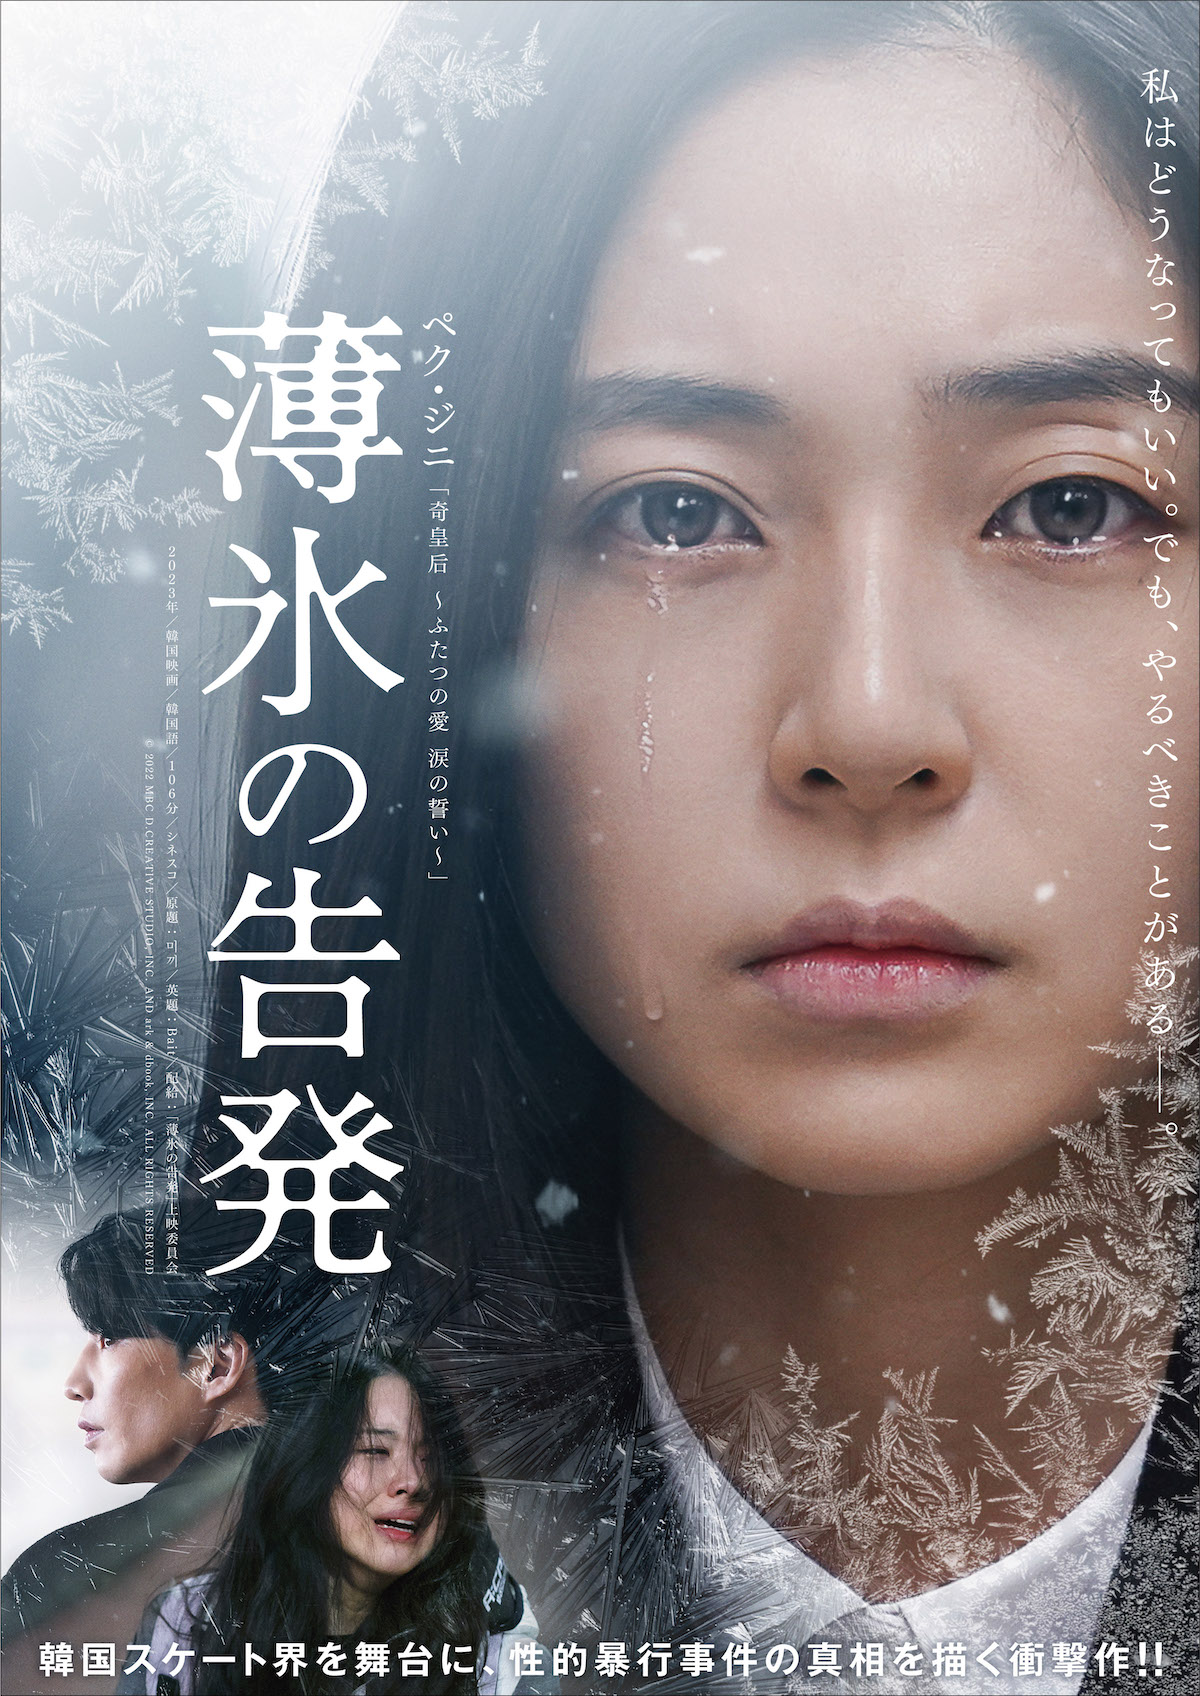 韓国映画『薄氷の告発』3月15日公開の画像